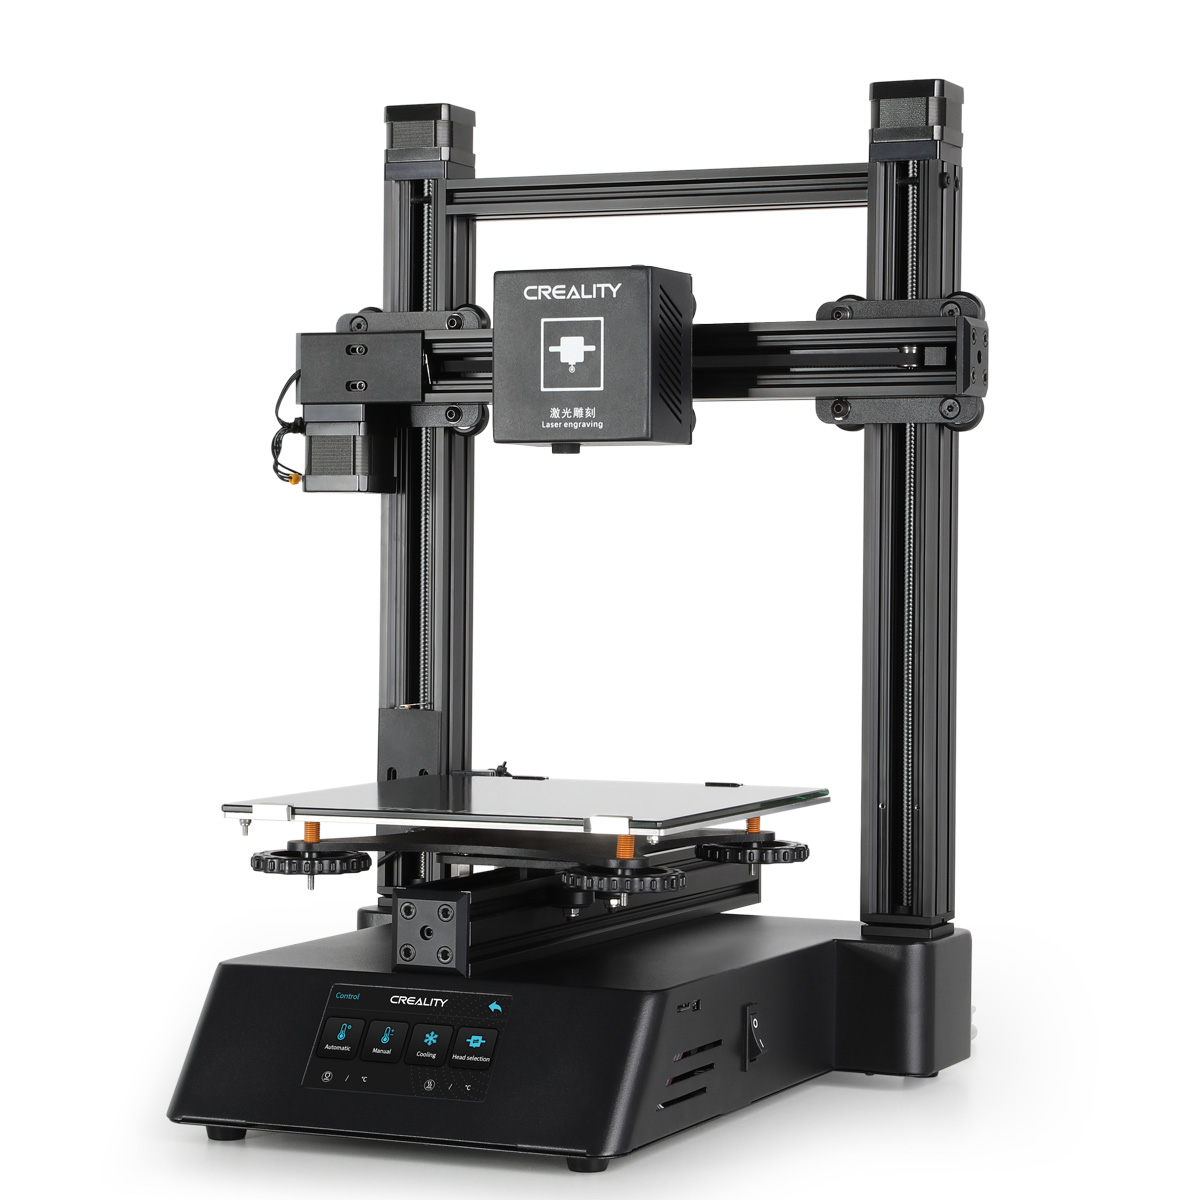 forestille accelerator udeladt Creality 3-i-1 3D printer med laserindgravering og CNC fræser - 3D printere  - Gadgethuset.dk